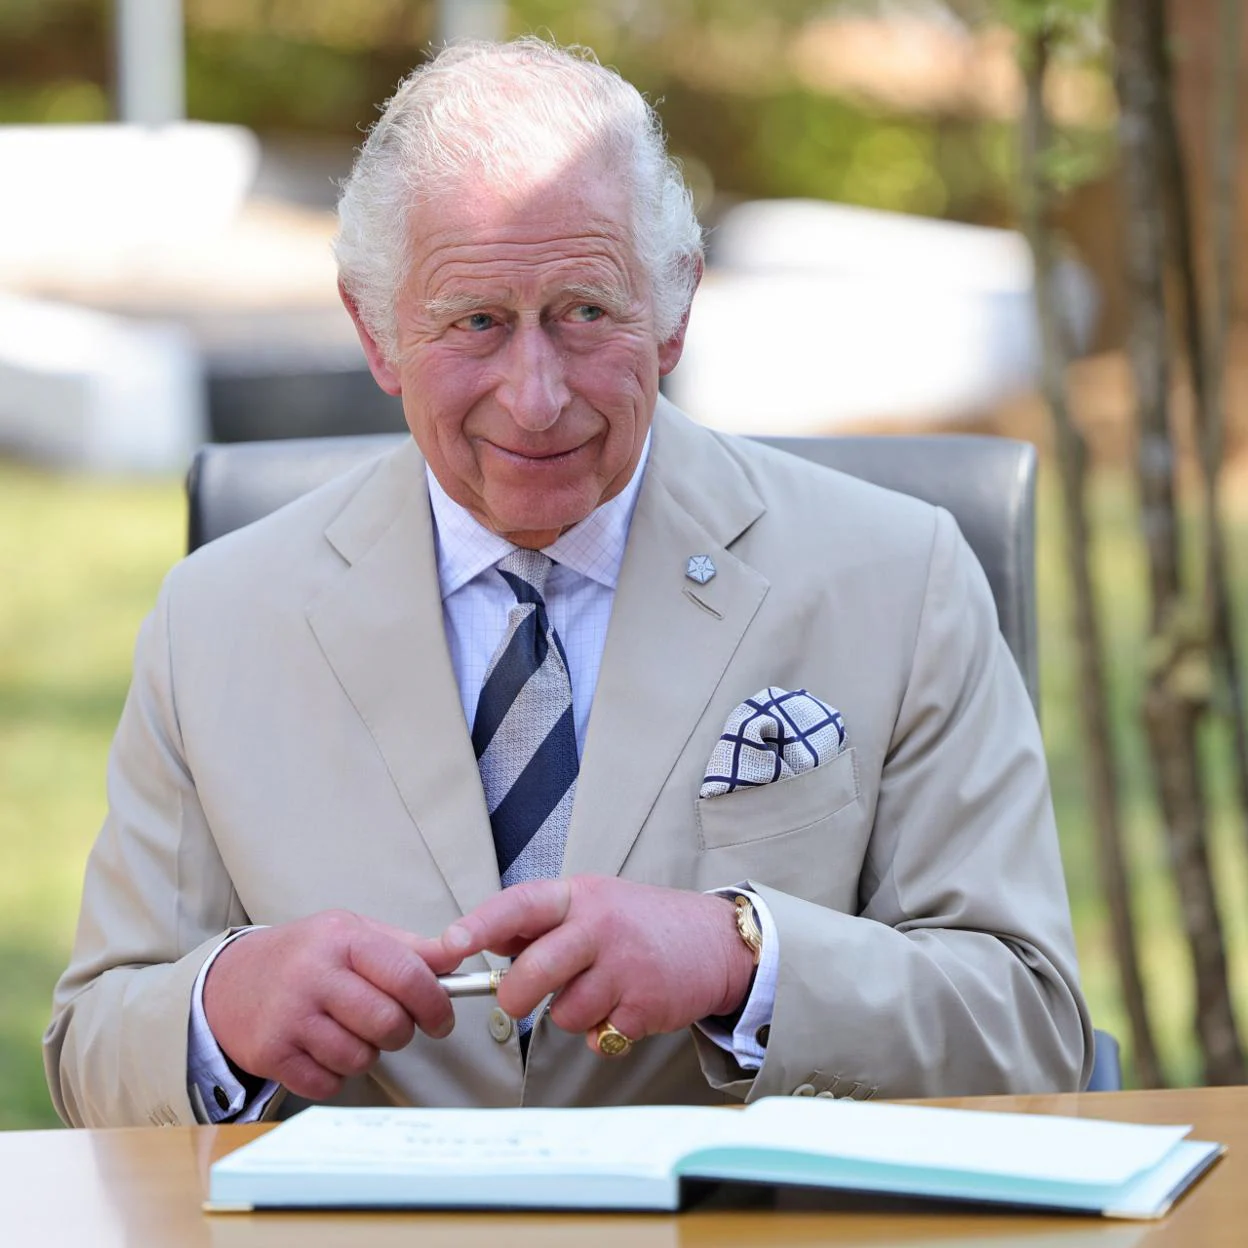 El rey británico Carlos III sonríe con un bolígrafo en la mano./gtres